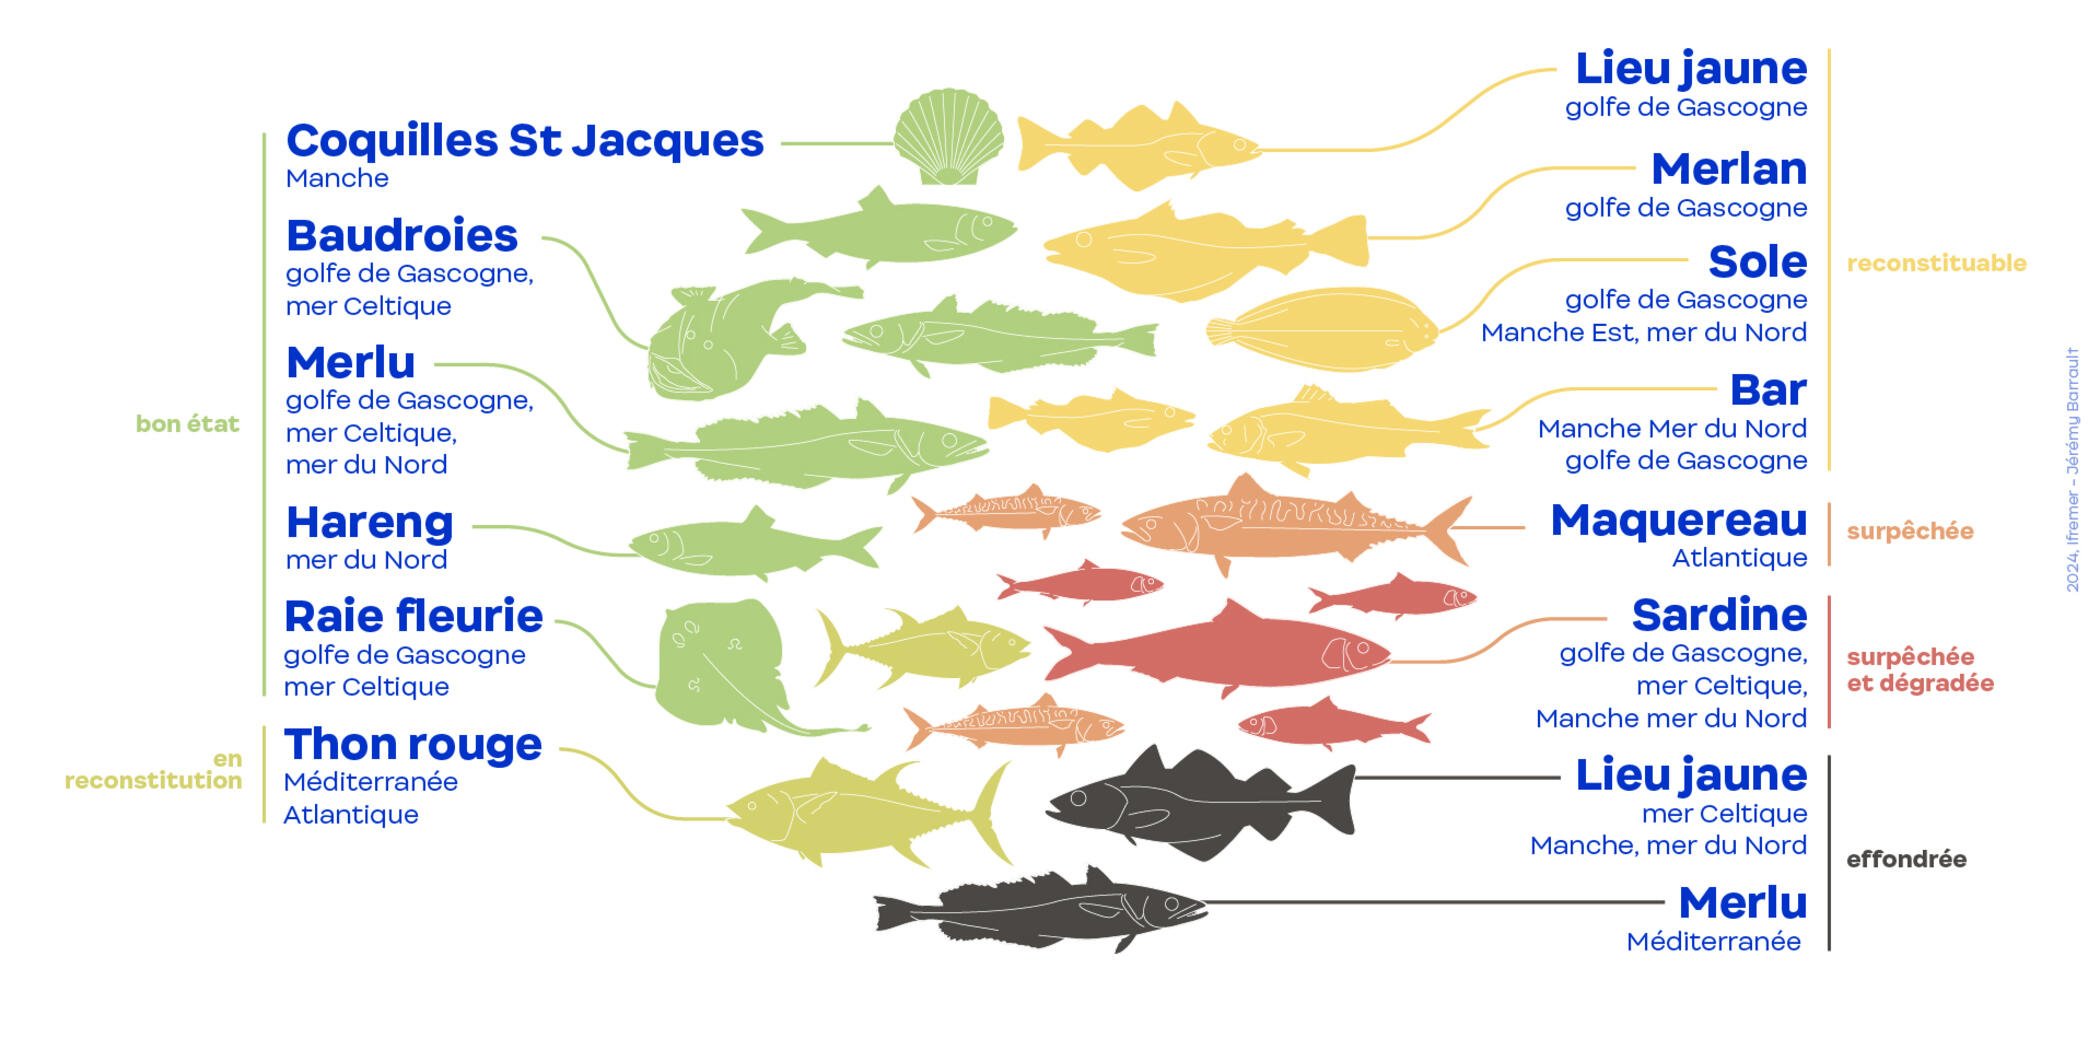 Bilan 2023 en France hexagonale : 56 % des volumes de poissons débarqués en 2022 proviennent de populations exploitées durablement. Une très légère progression.